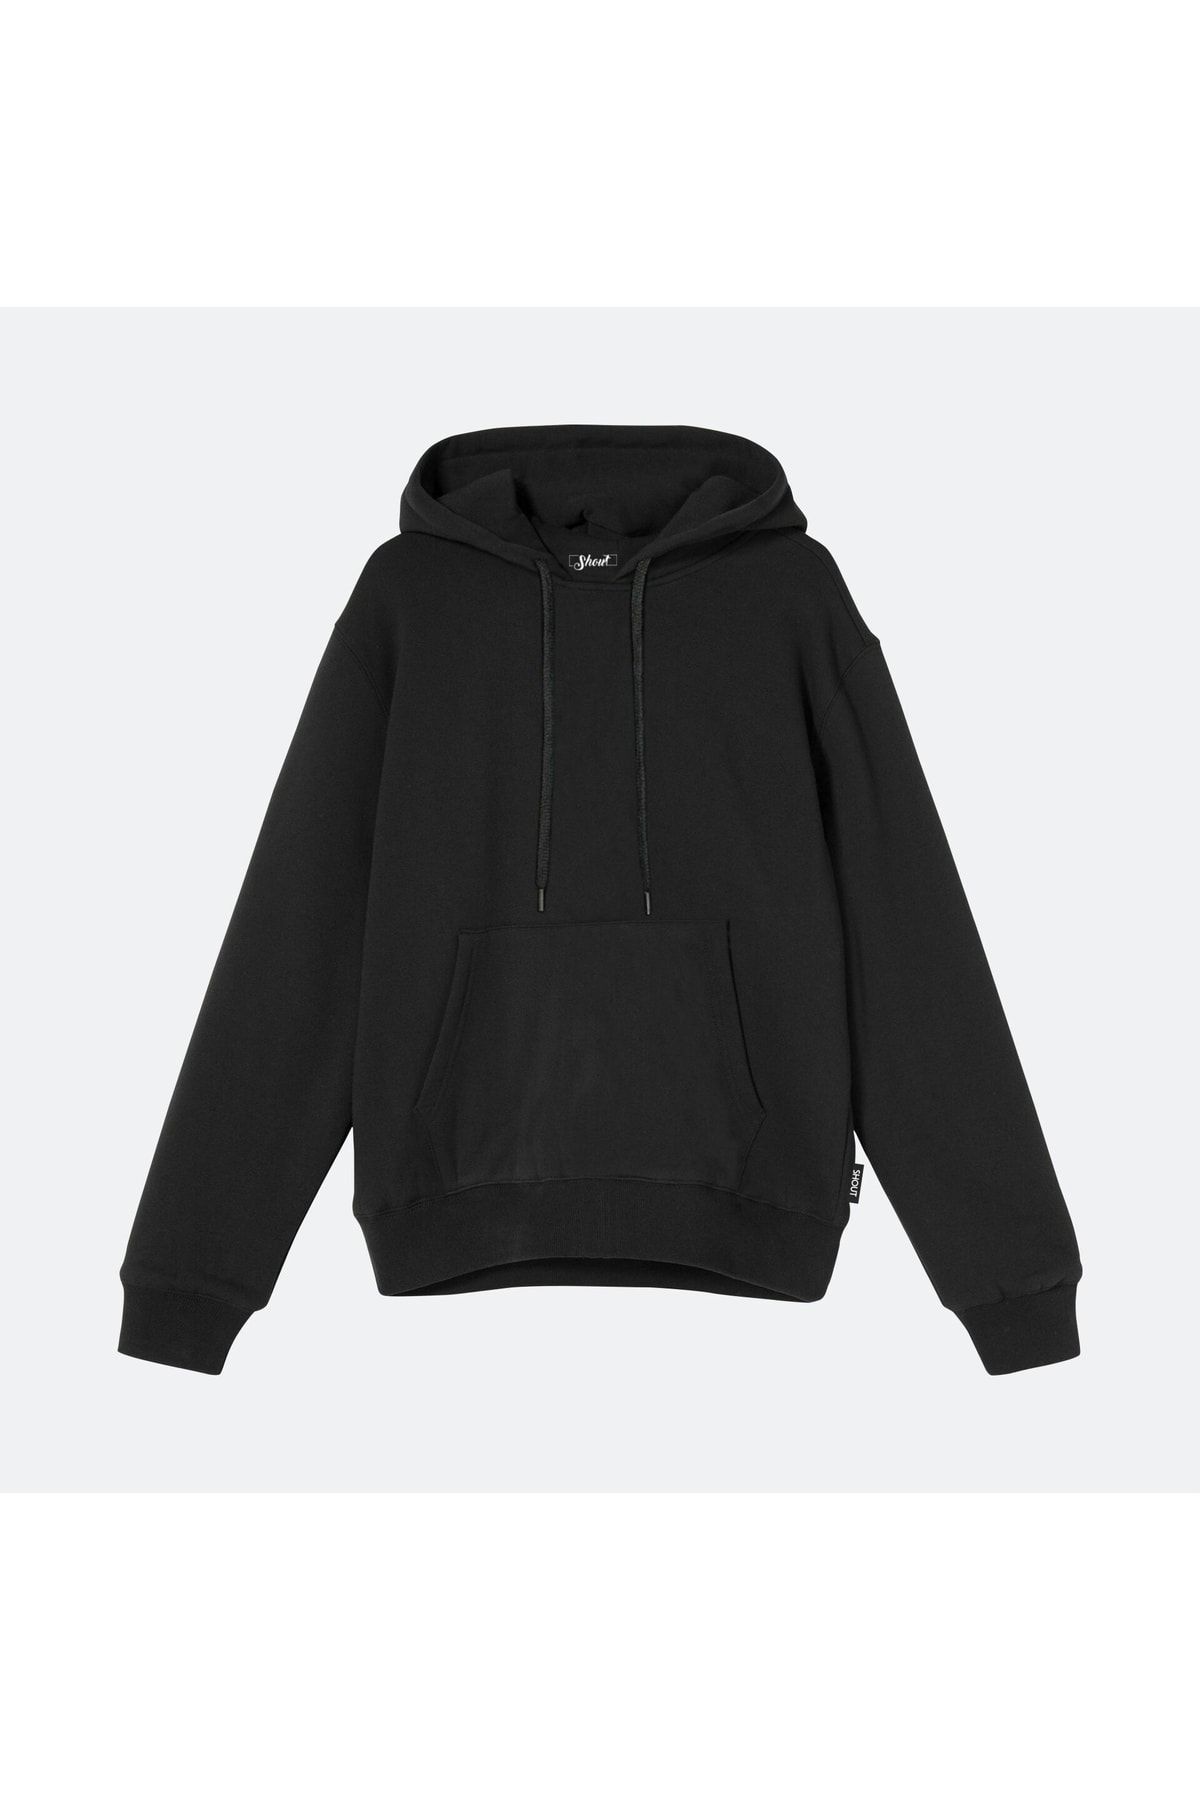 Shout Unisex Oversize Siyah Basic Sweatshirt